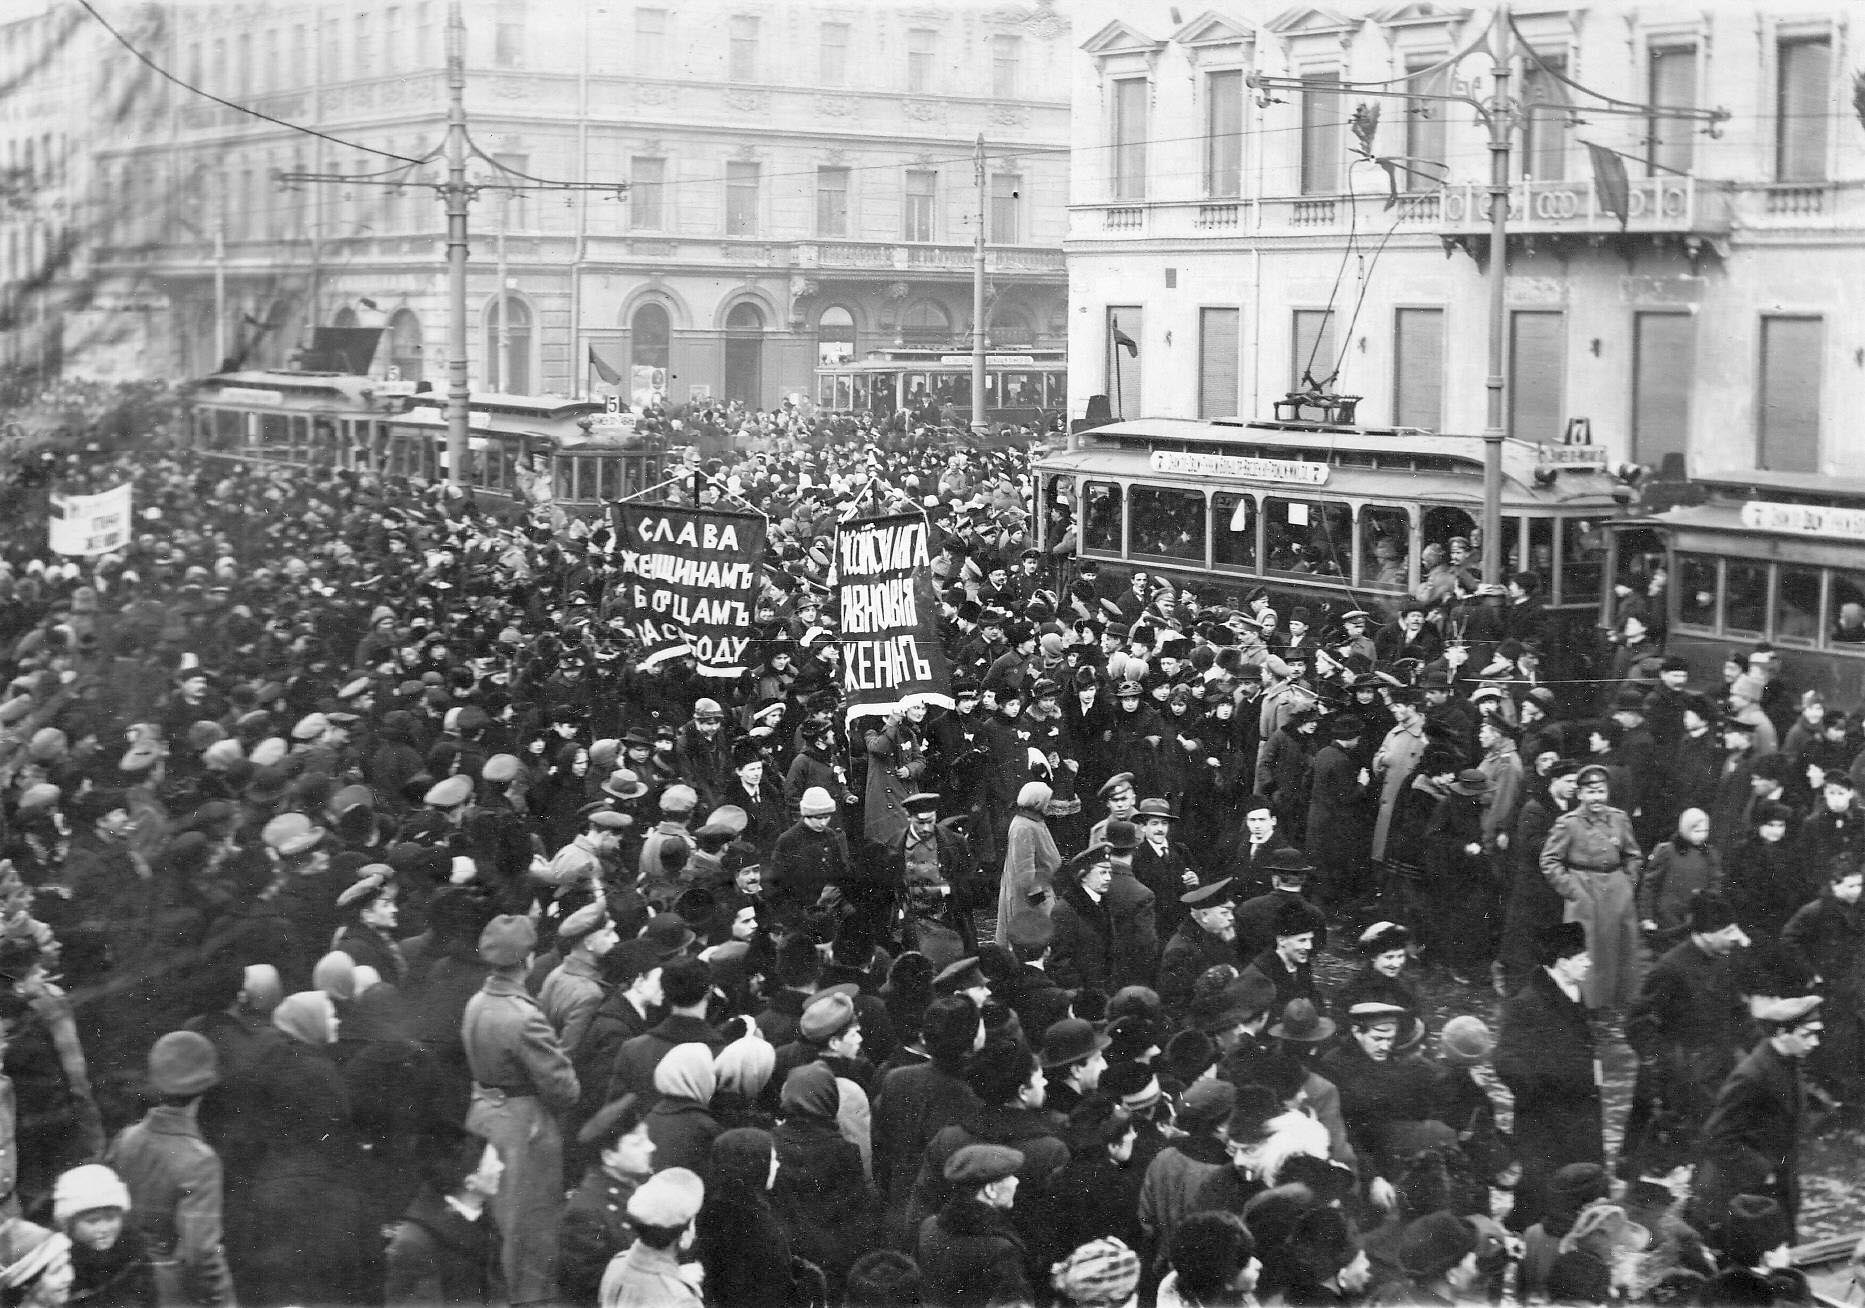 Общество в россии в 1917 г